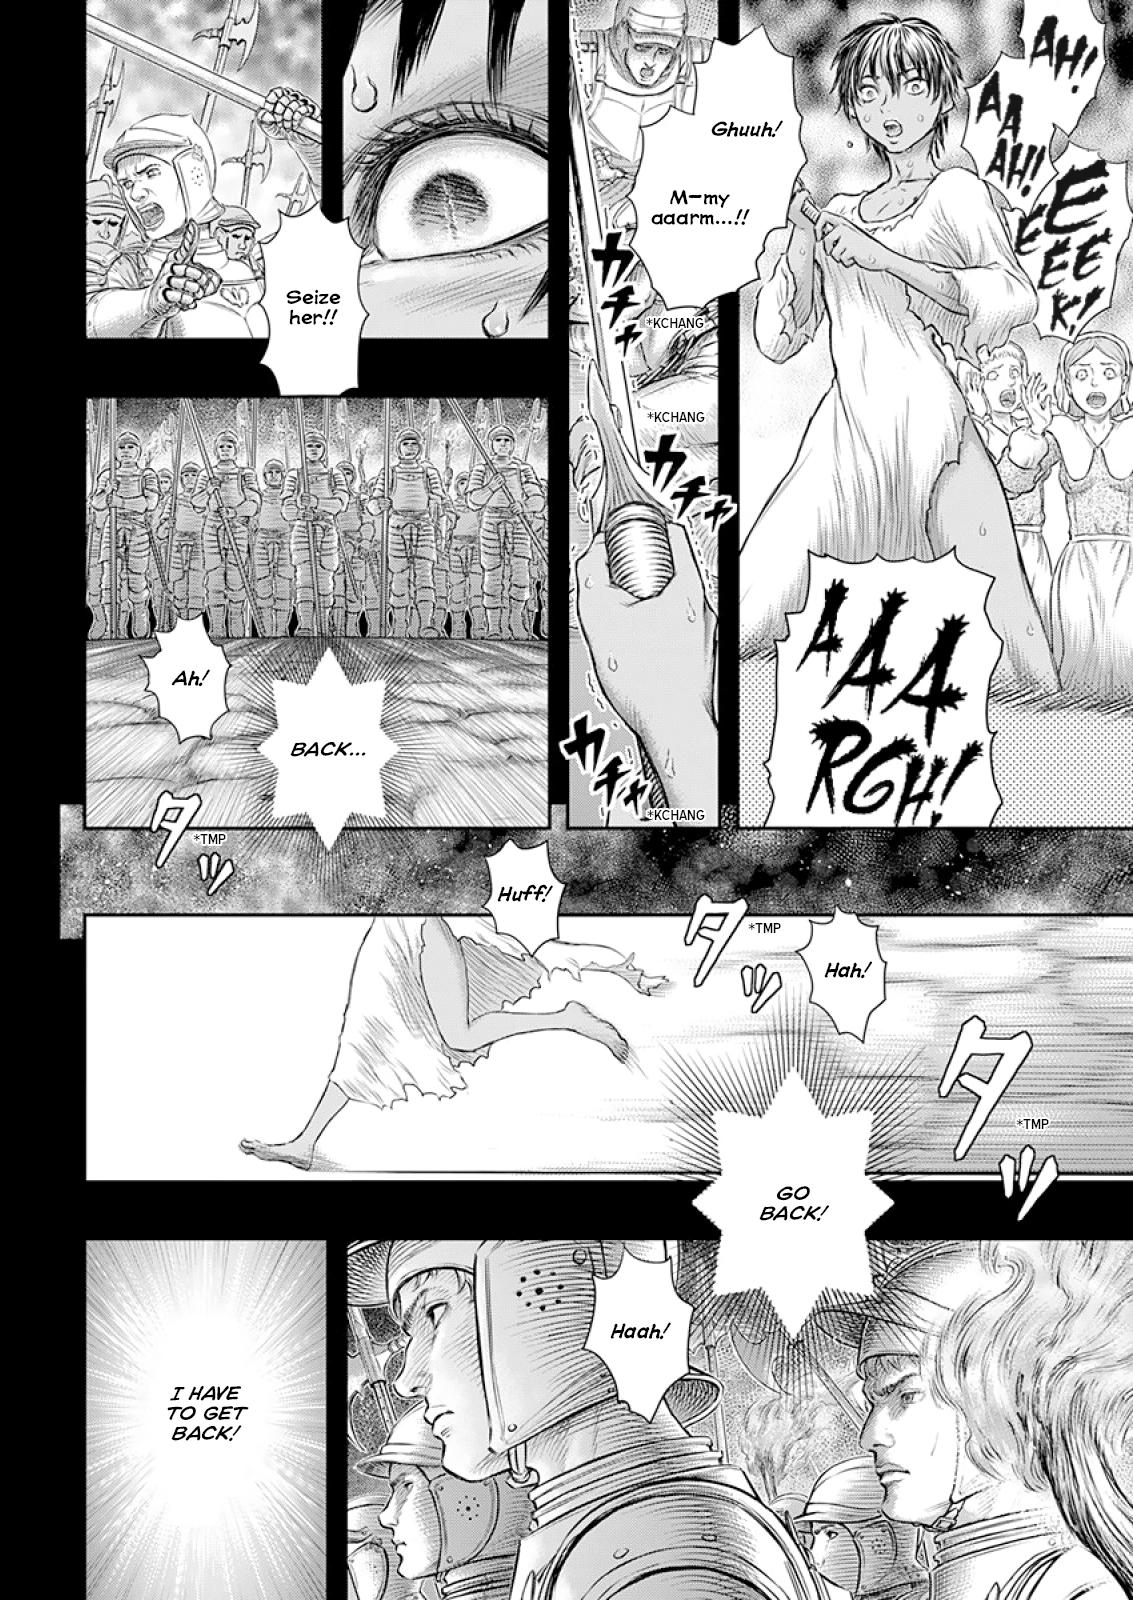 Berserk Manga Chapter 372 image 17